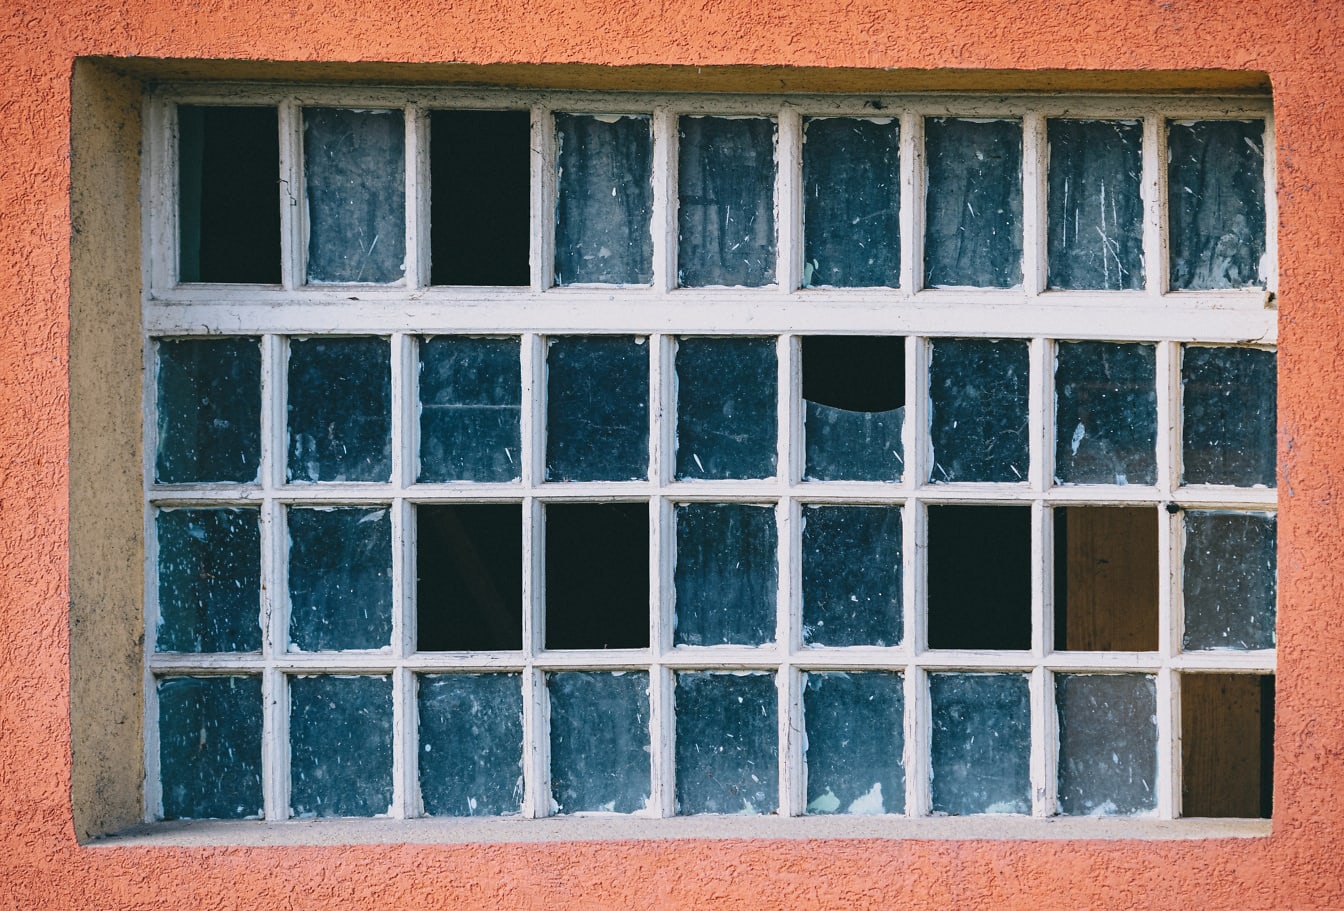 Vanha ikkuna, jossa on monia pieniä kehyksiä ja rikkoutunutta lasia